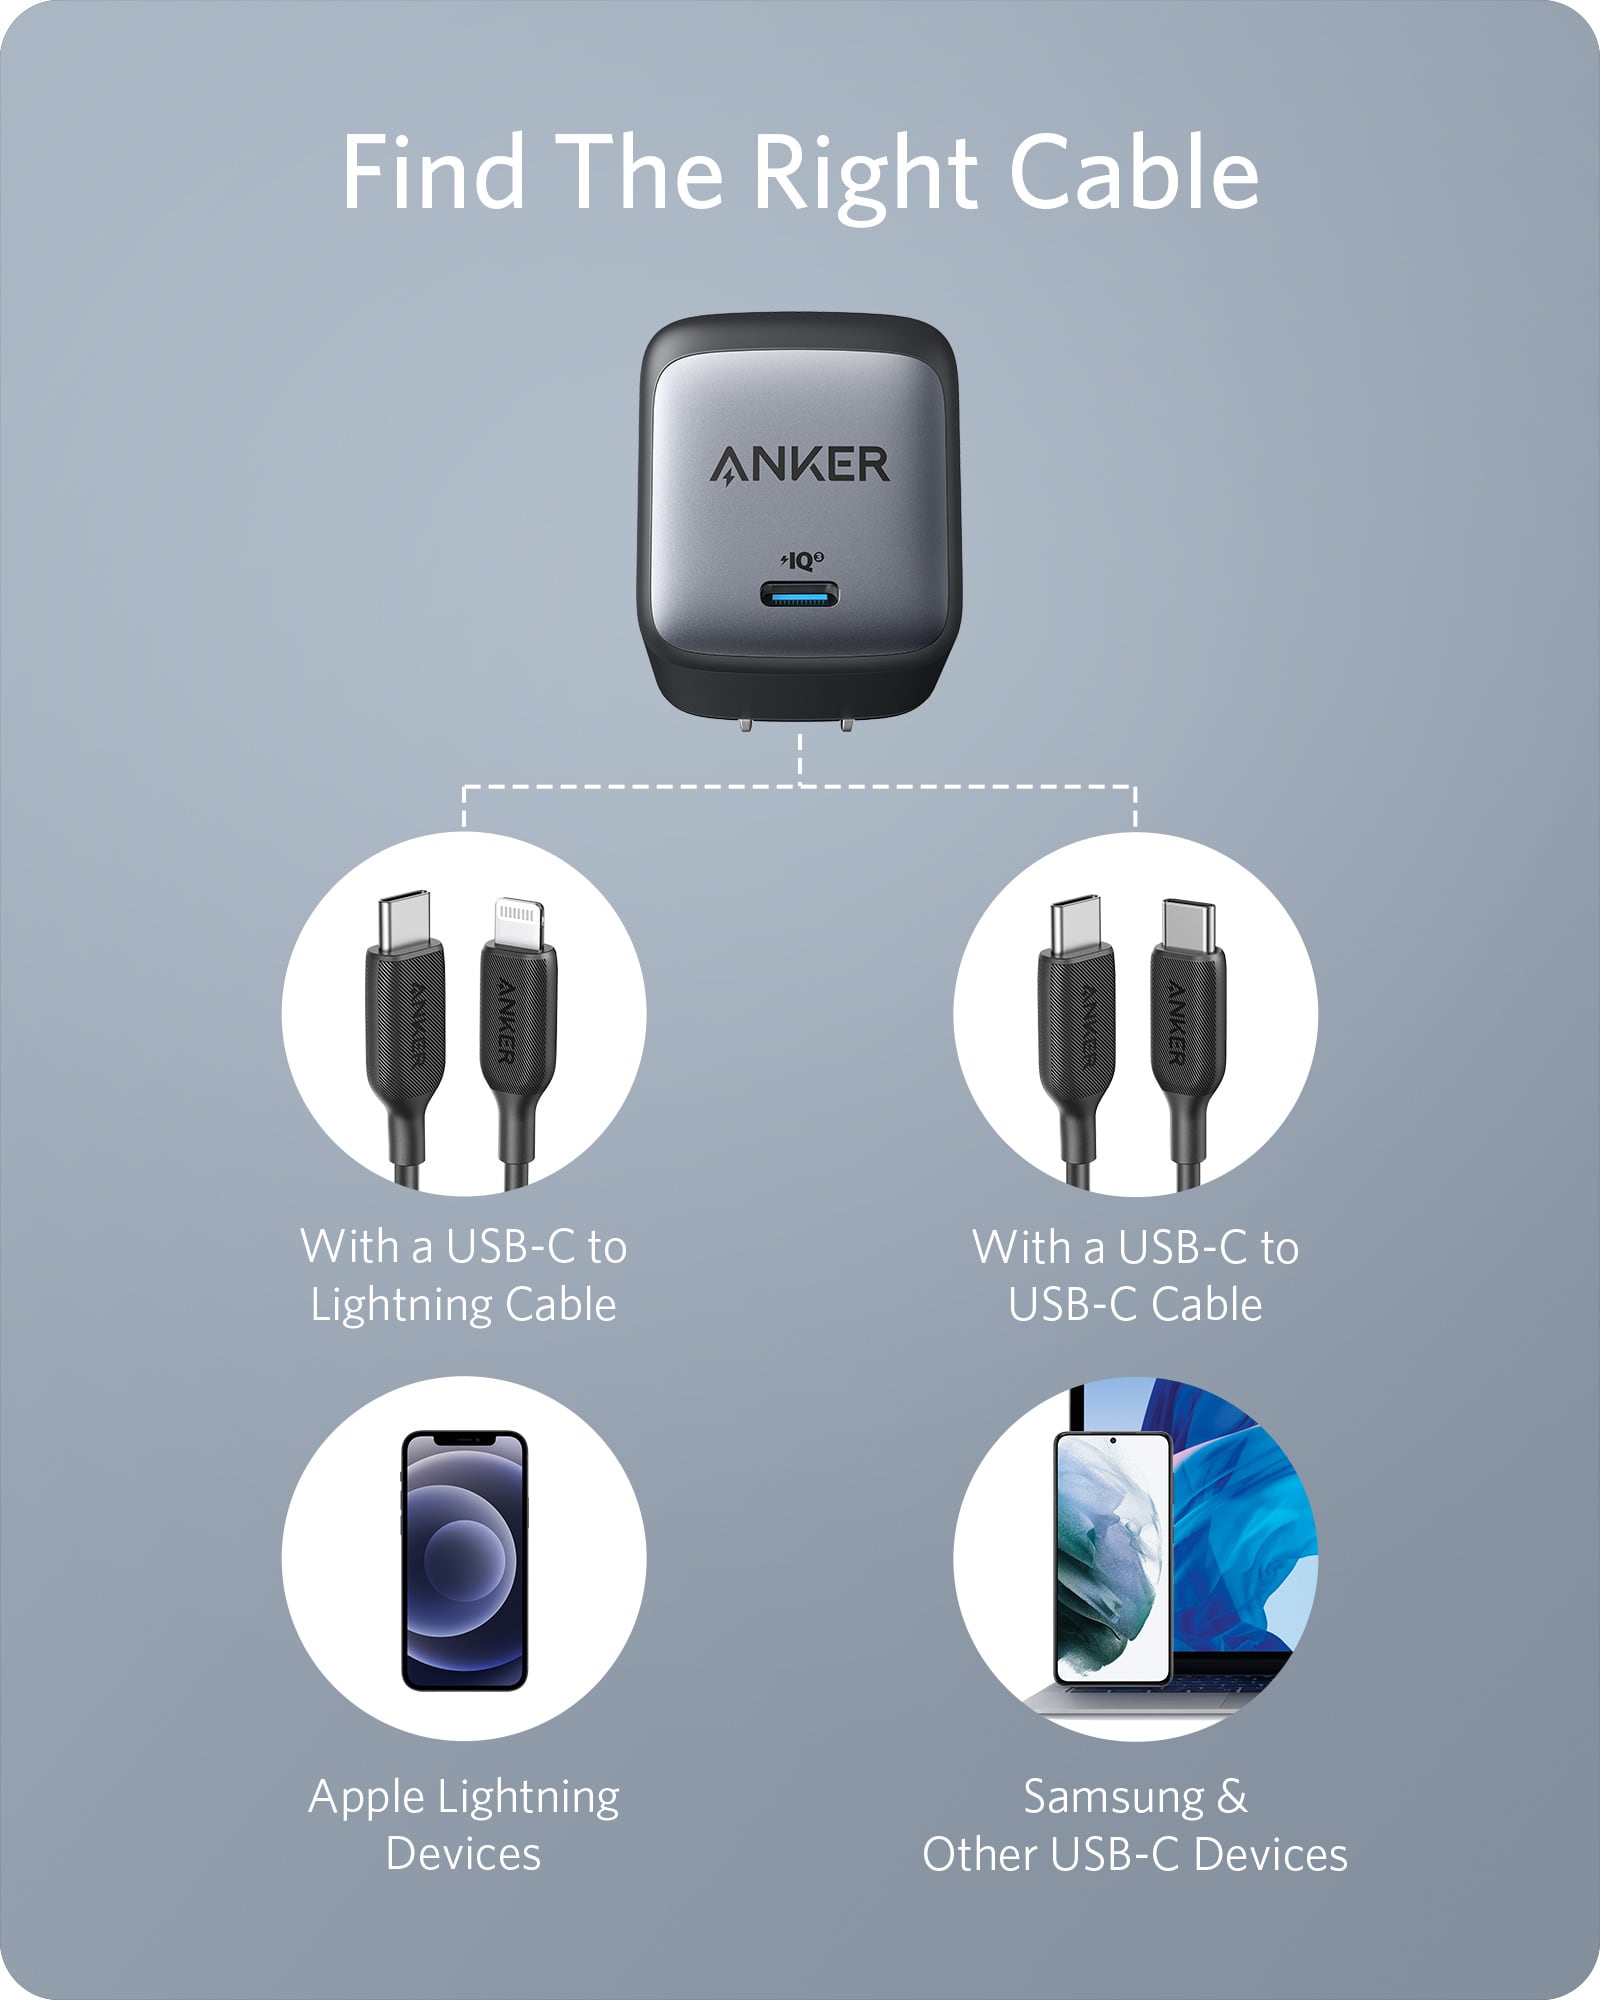 Anker Cargador USB C Prime de 67 W, Anker GaN 3 puertos compacto y rápido  PPS cargador de pared, para MacBook Pro/Air, Pixelbook, iPad Pro, iPhone